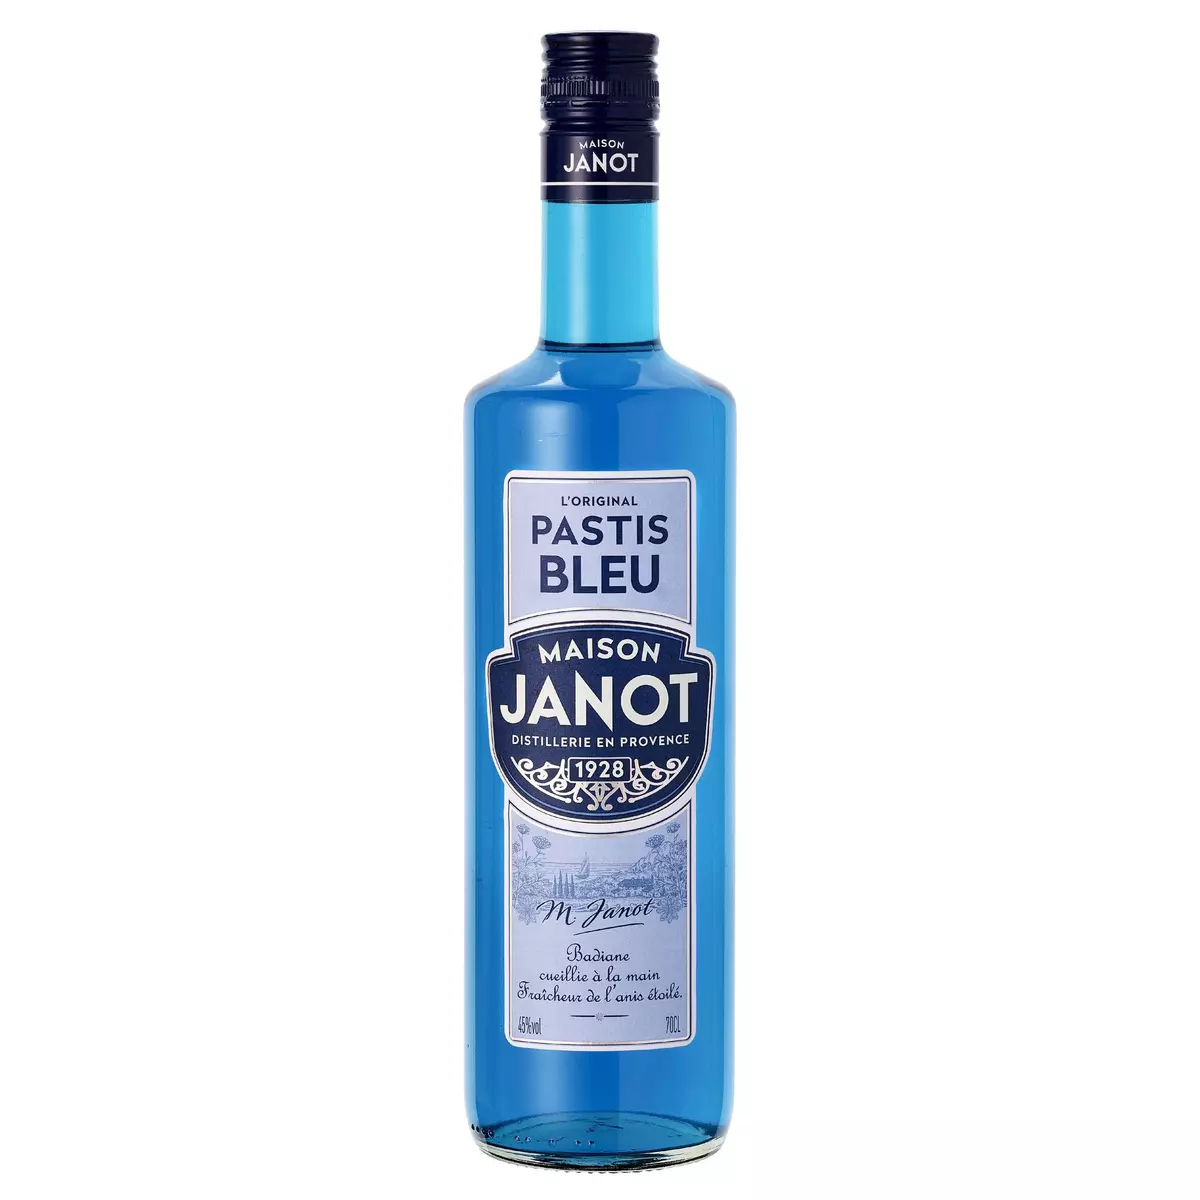 MAISON JANOT Pastis bleu 45% 75cl